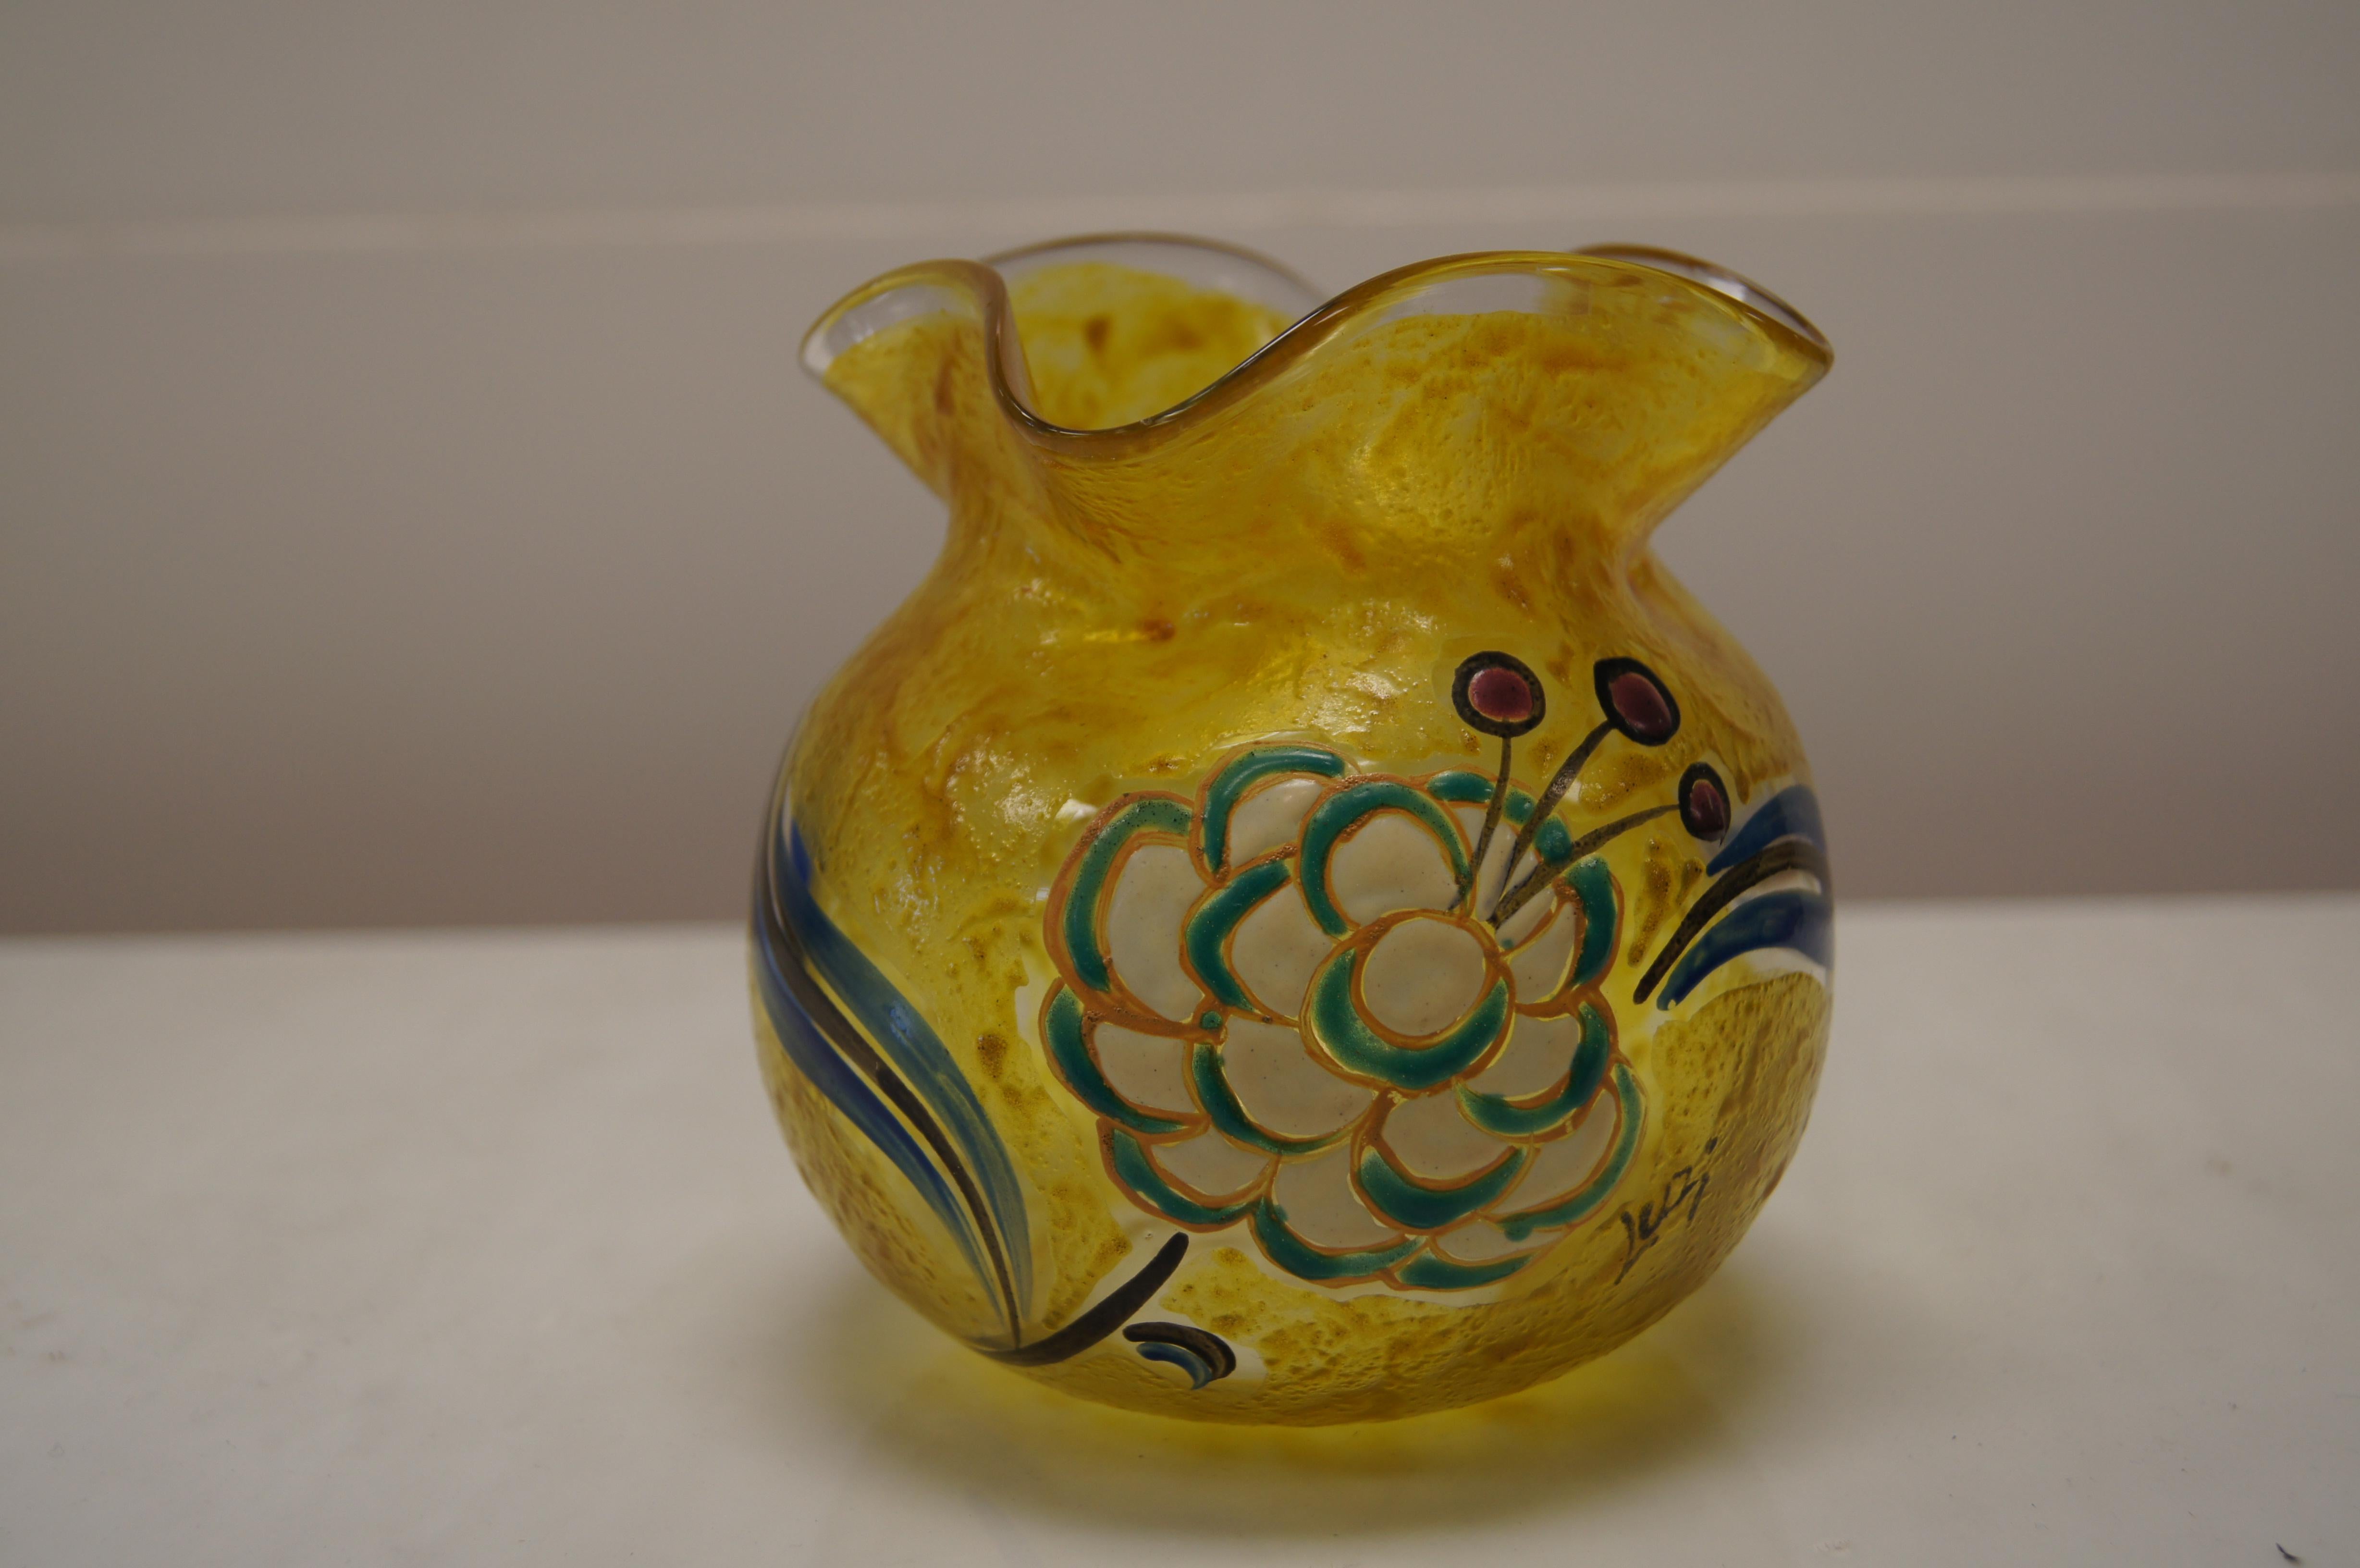 Ce joli vase jaune d'or de la Verrerie Legras du célèbre verrier François-Théodore Legras présente une base ronde et un col cannelé. L'une des faces est émaillée d'une grande fleur de couleur crème, verte et bleue. 

Le vase est signé à droite de